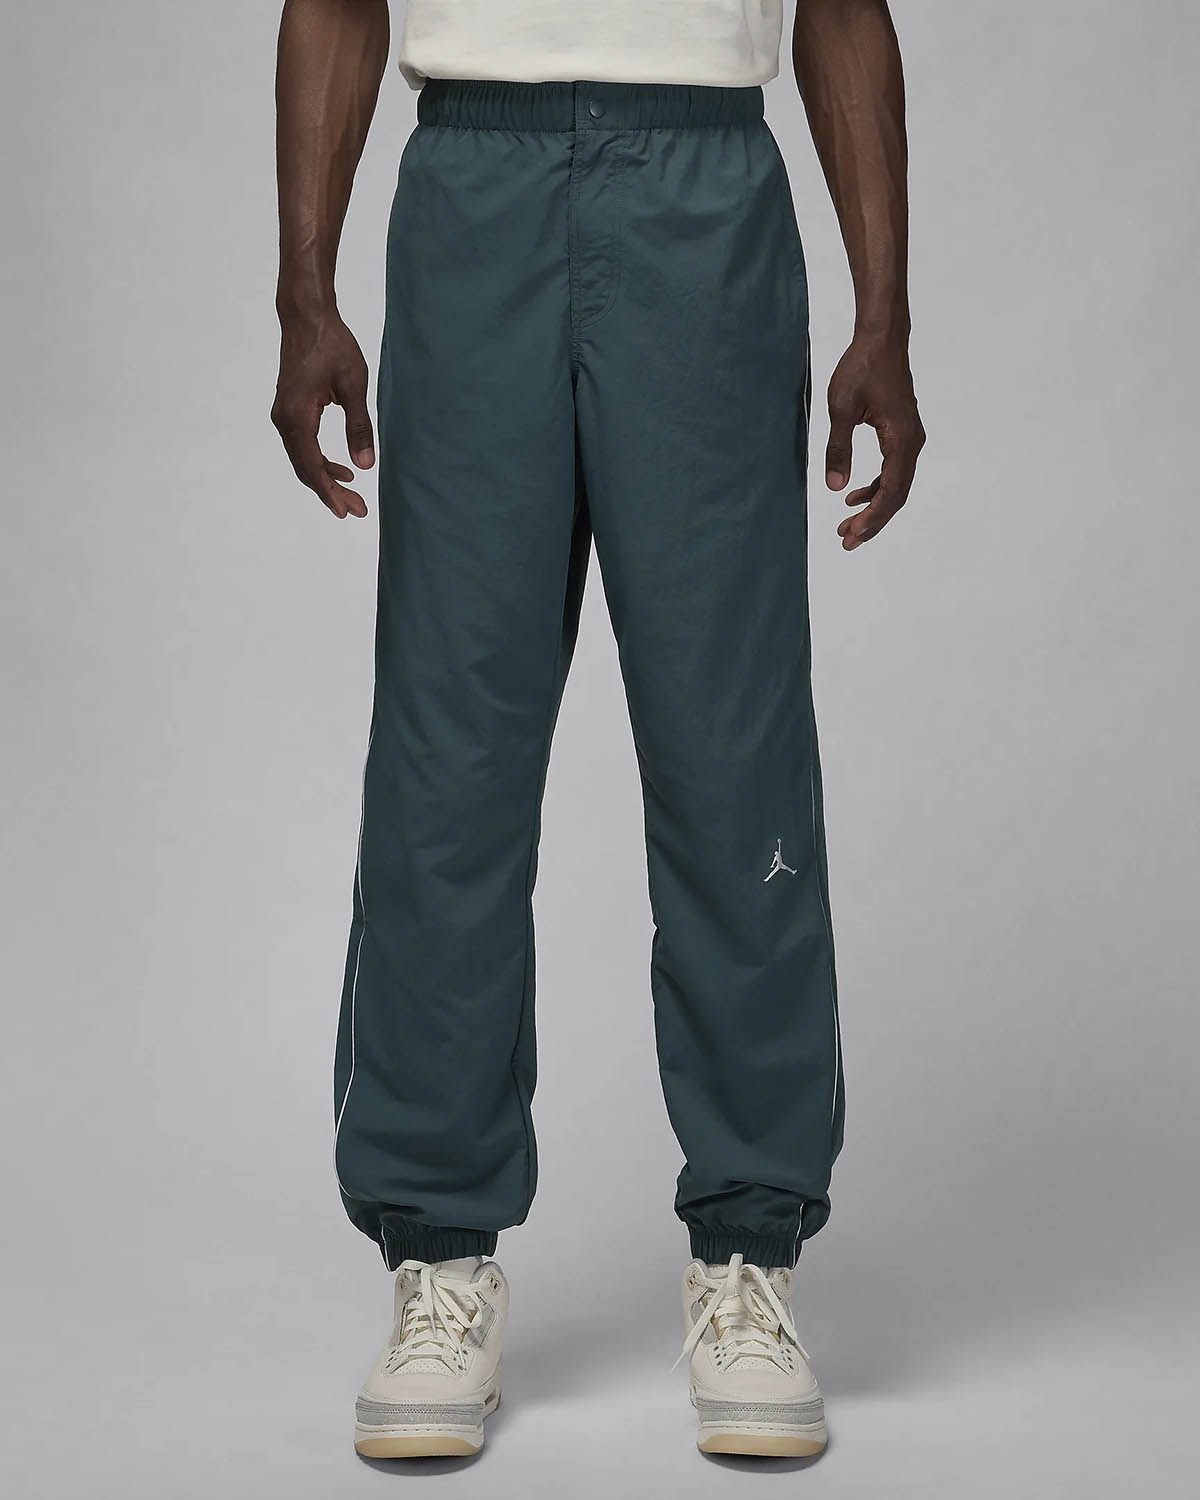 Jordan MVP Woven Pants Oxidized Green 1